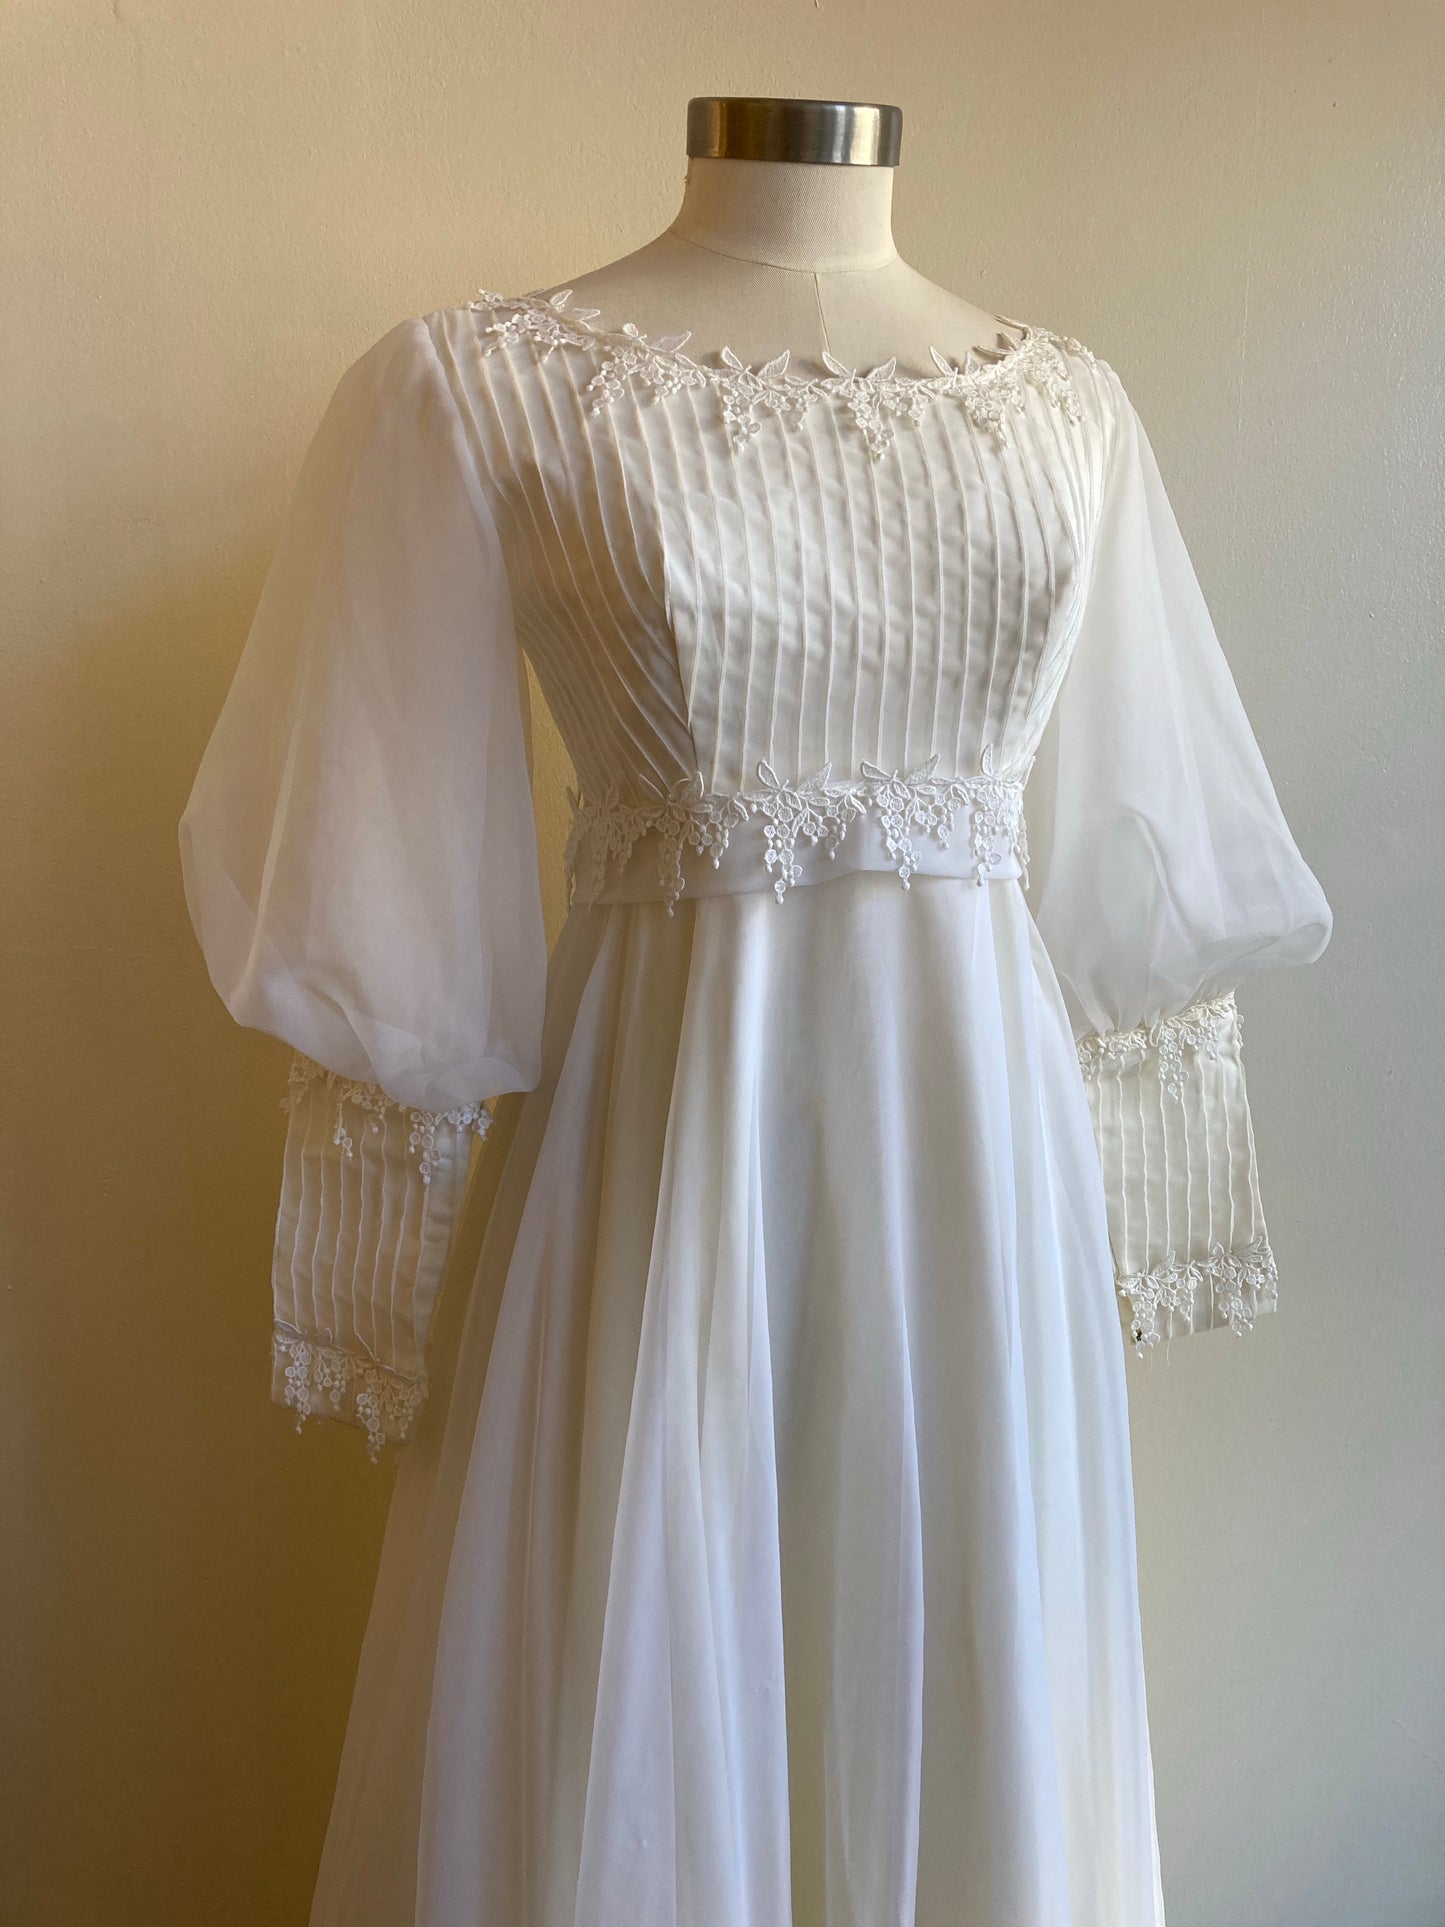 "Wisteria" ‘70s Boho Wedding Dress, Size S